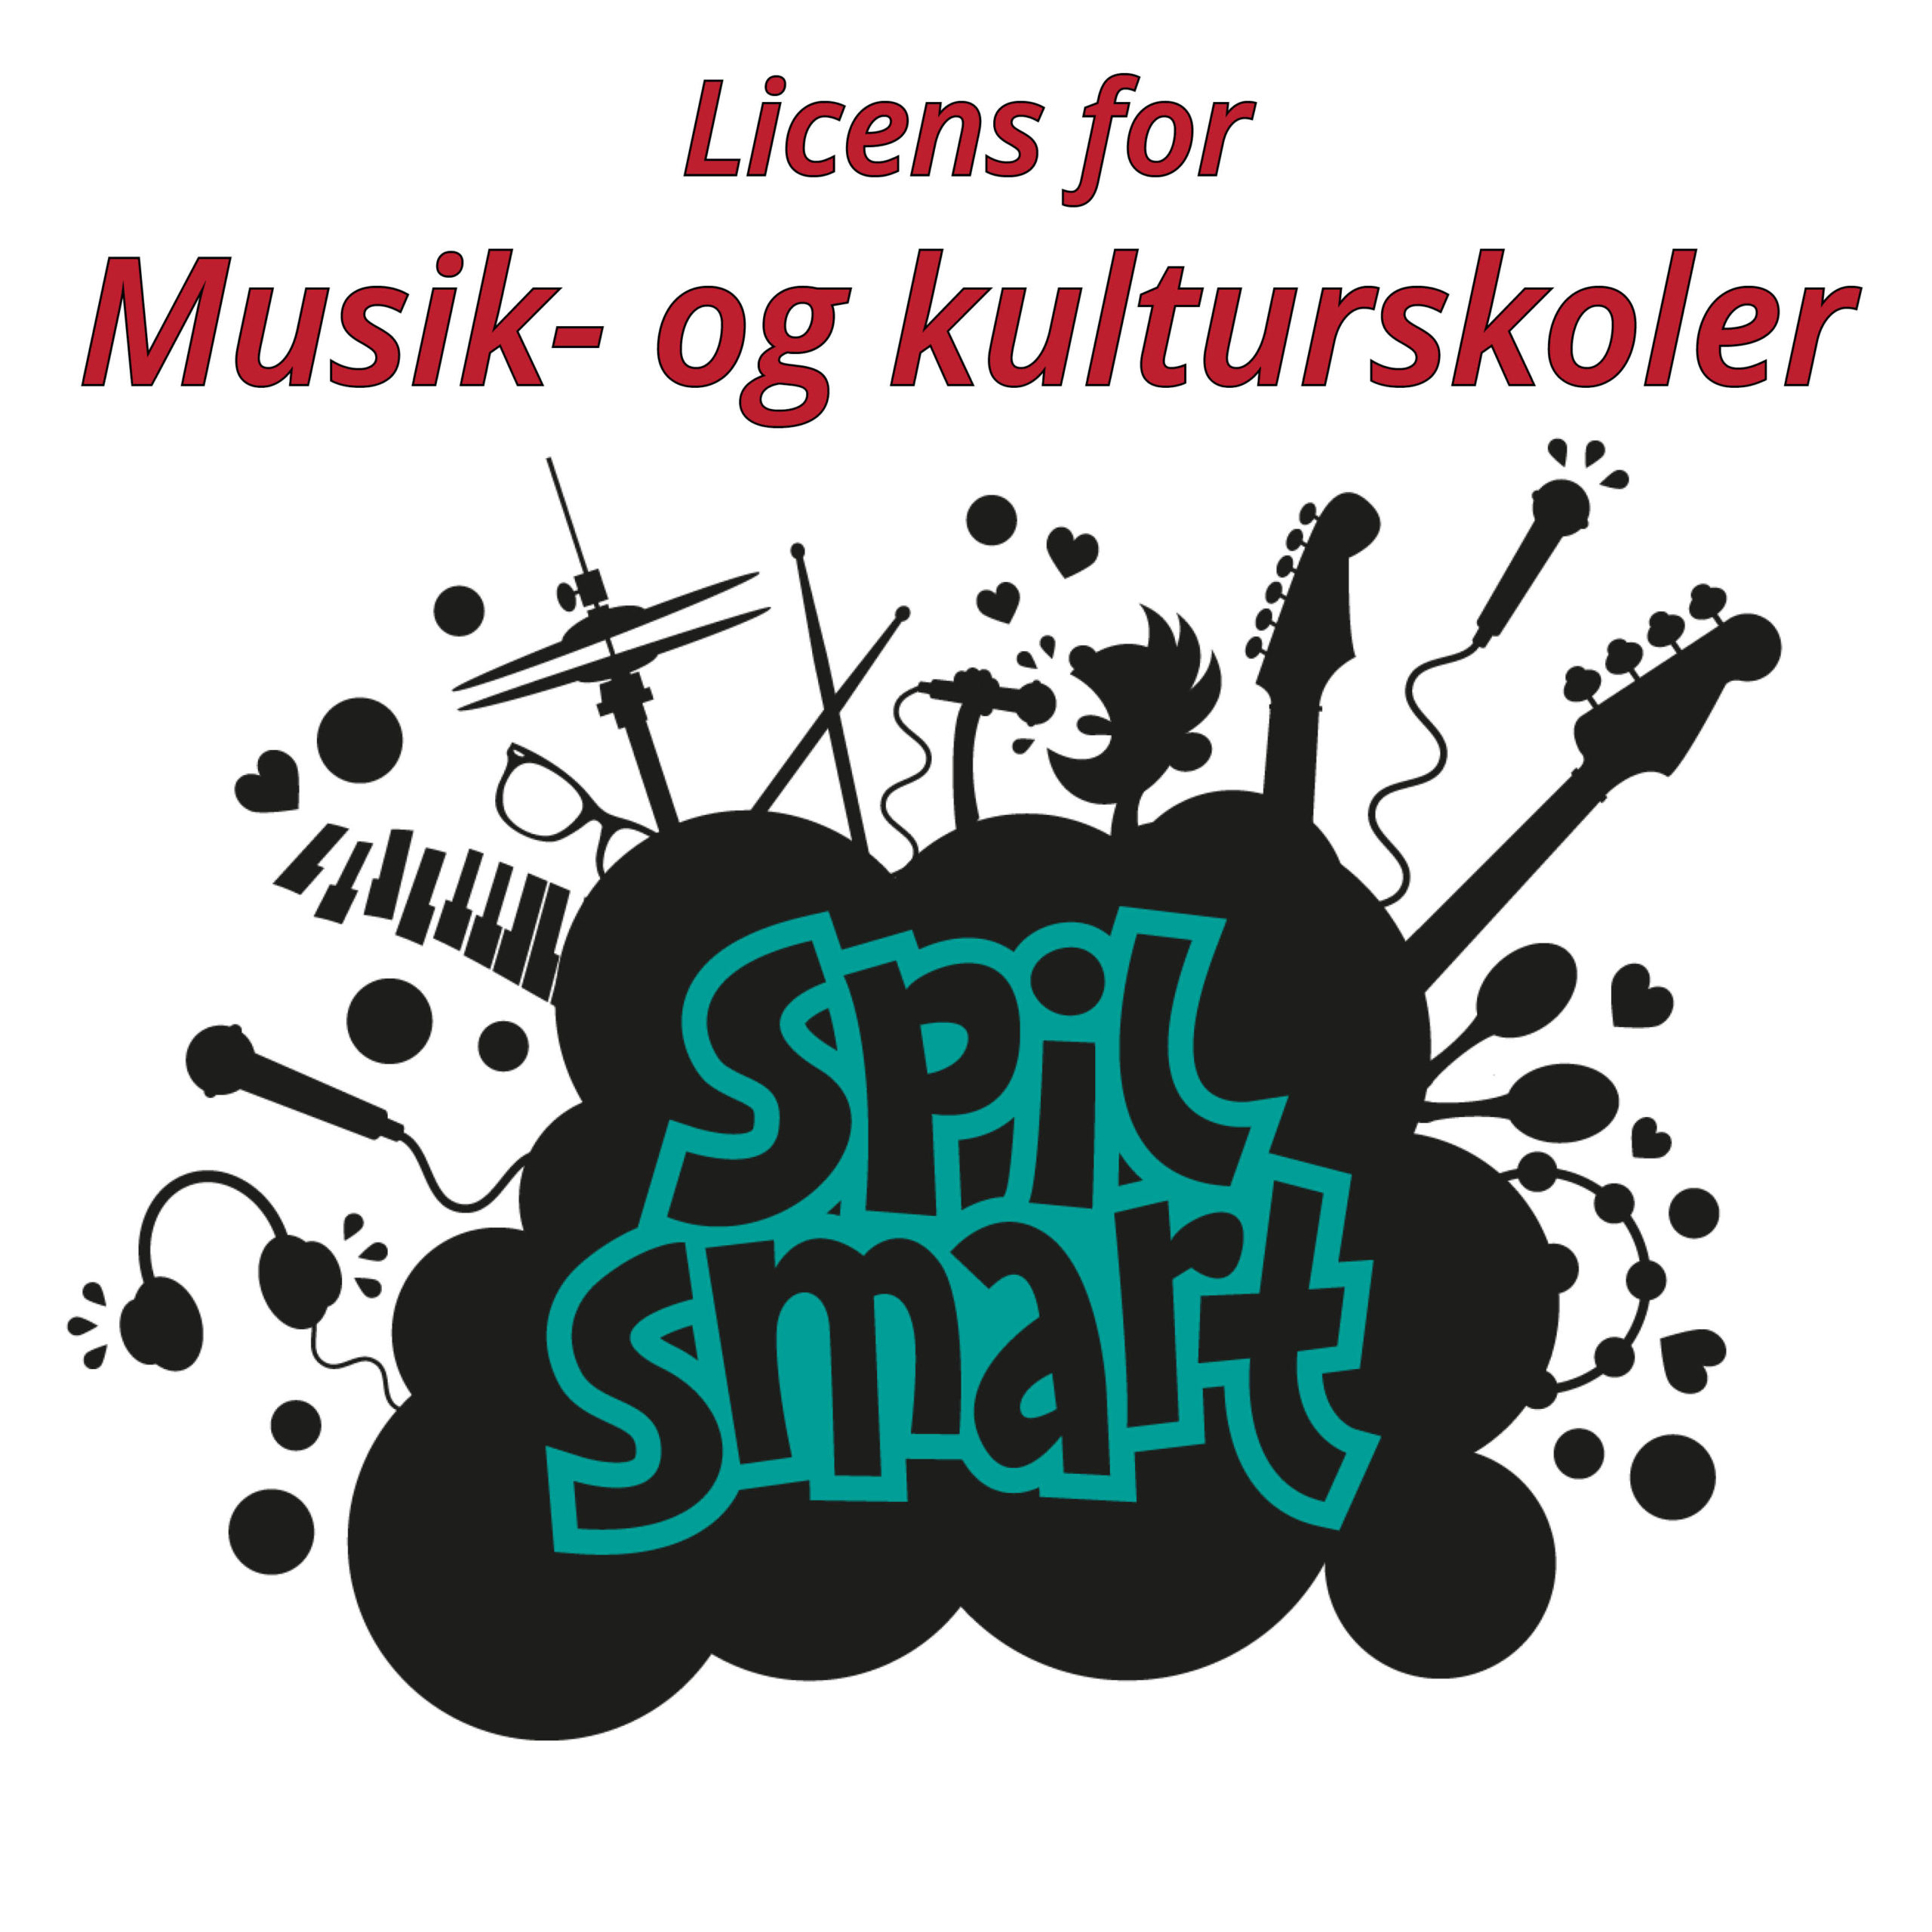 Spil Smart licens for musik- og kulturskoler